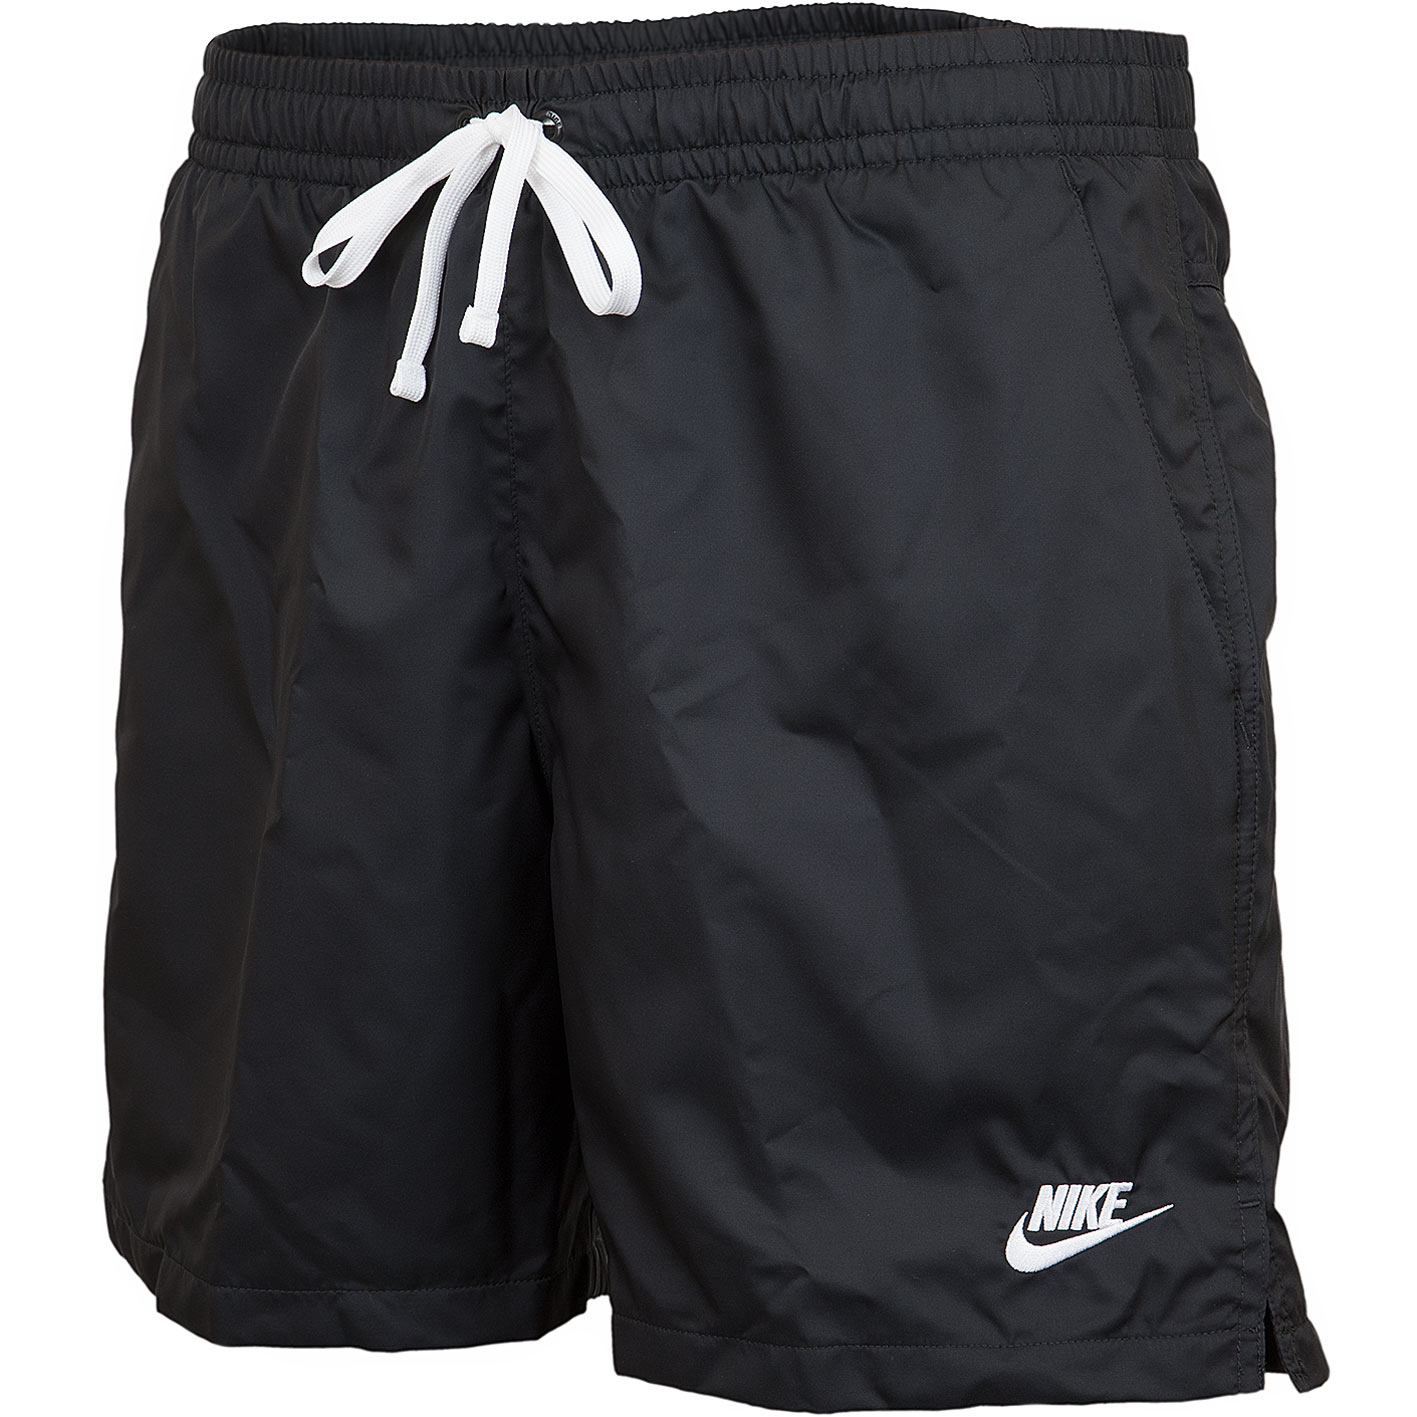 ☆ Nike Shorts Woven Flow schwarz/weiß - hier bestellen!